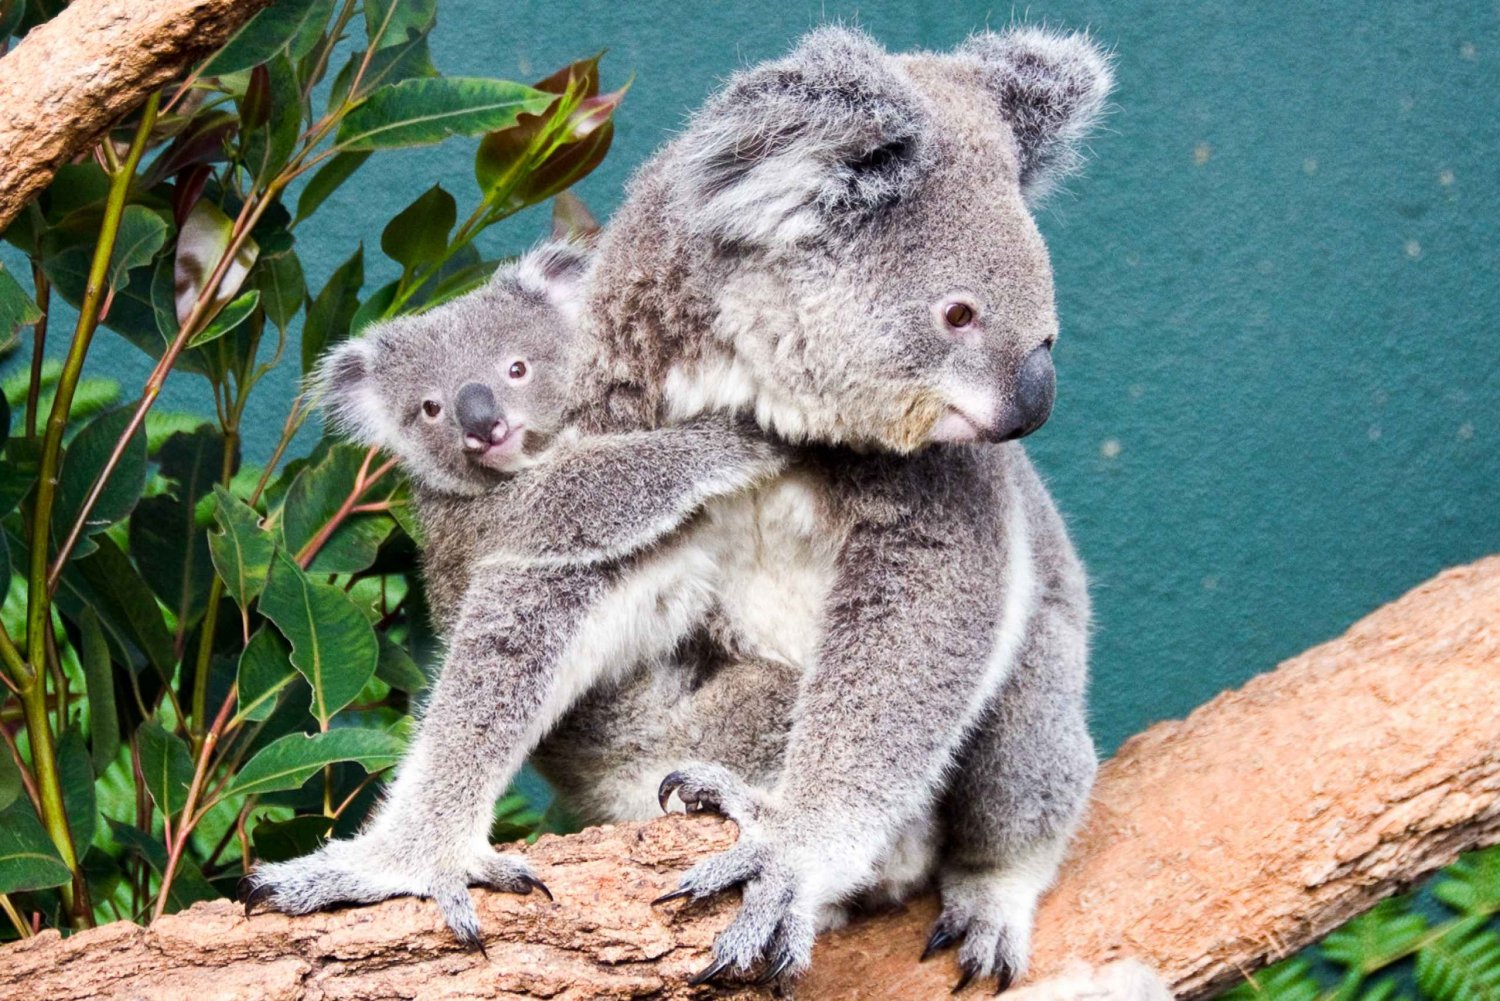 WILD LIFE Sydney Zoo: Entrébillet